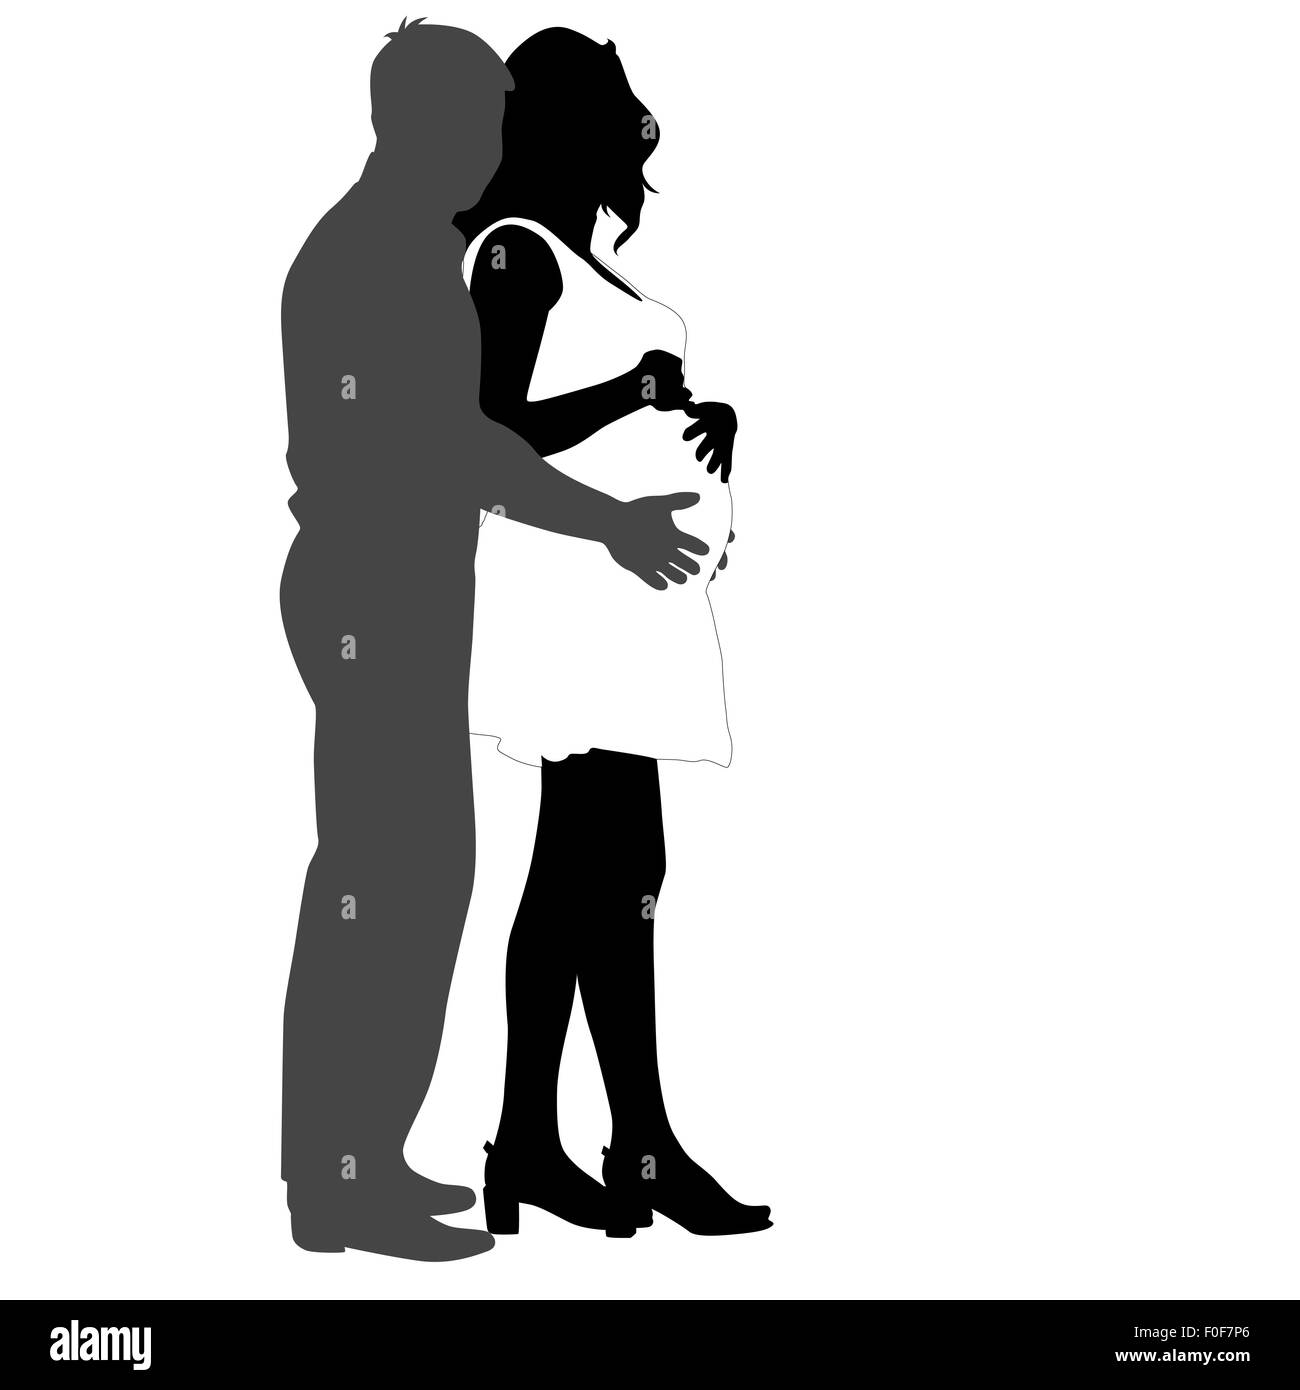 Heureux Silhouette femme enceinte et son mari. illustra Banque D'Images